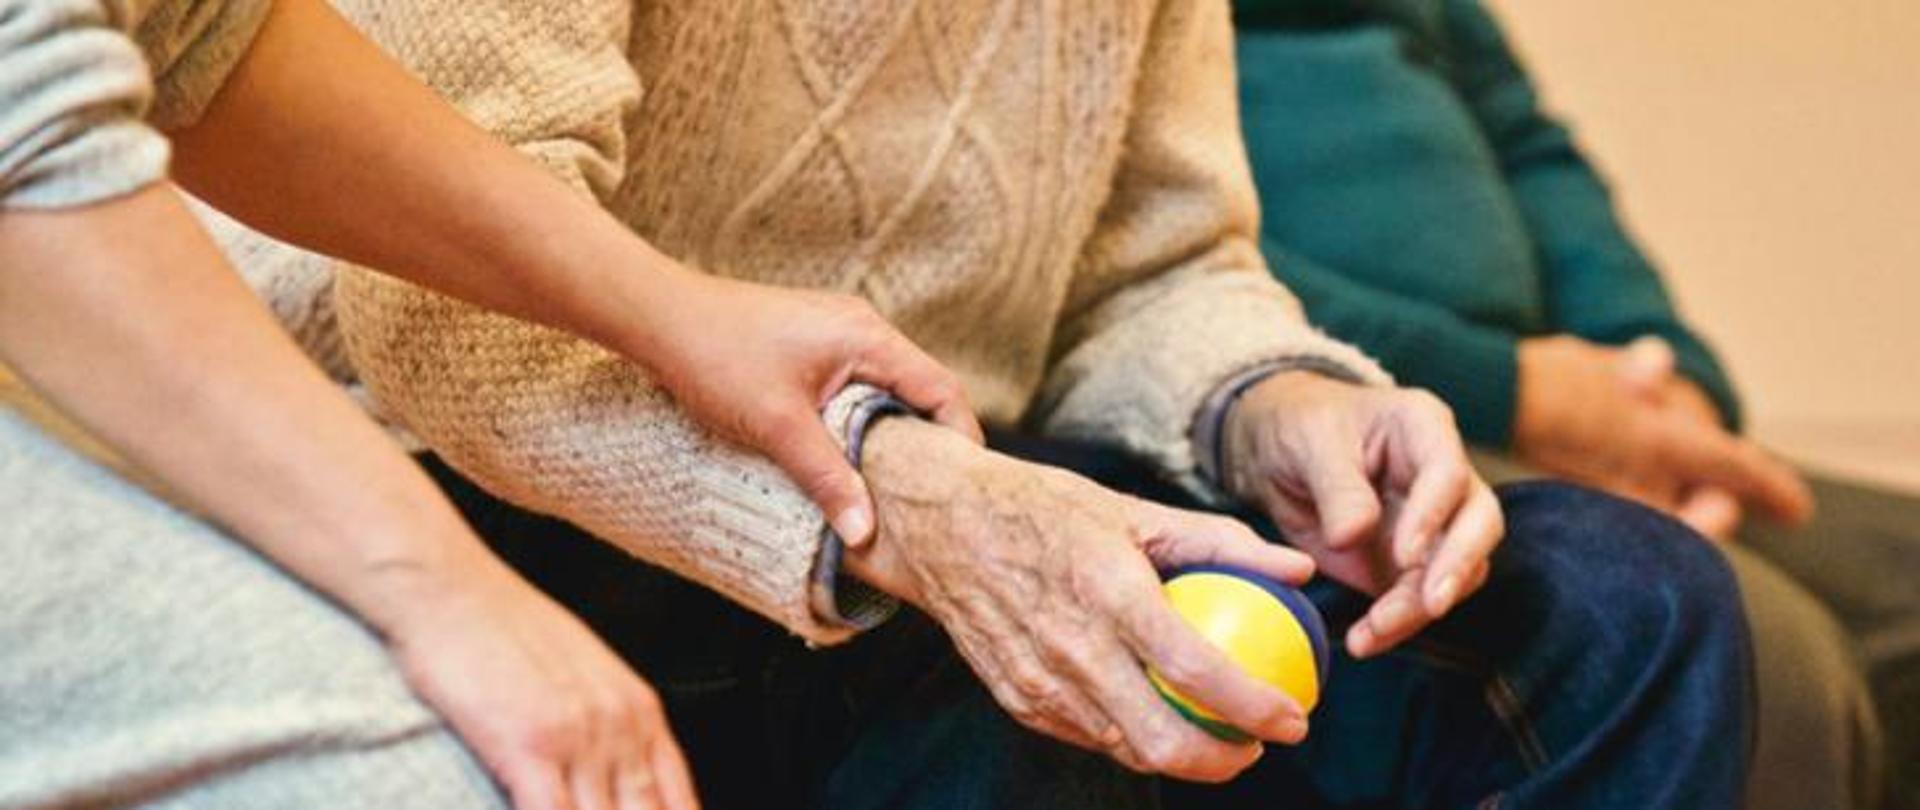 Starsza kobieta trzyma w dłoni małą piłkę